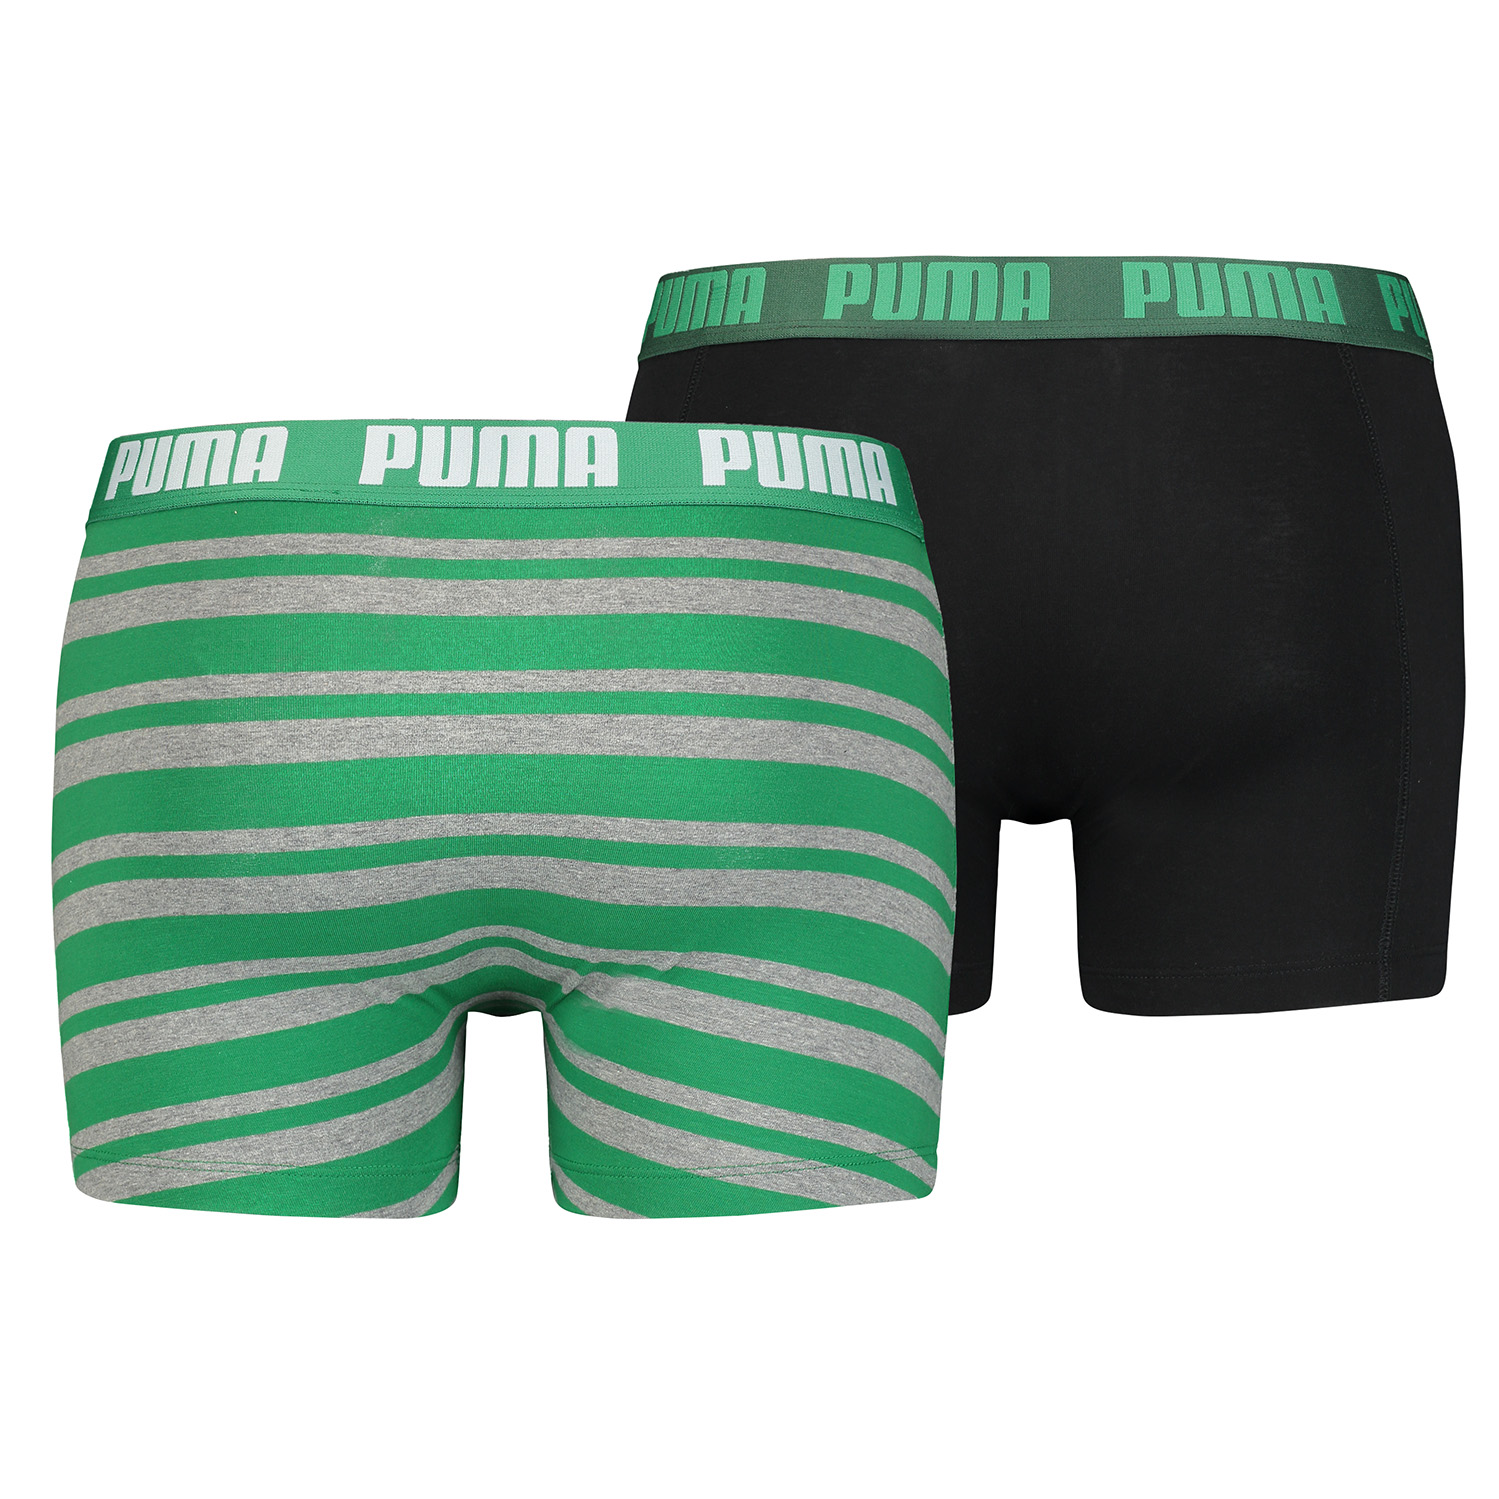 2 er Pack Puma Boxer Boxershorts Men Herren Unterhose Pant Unterwäsche